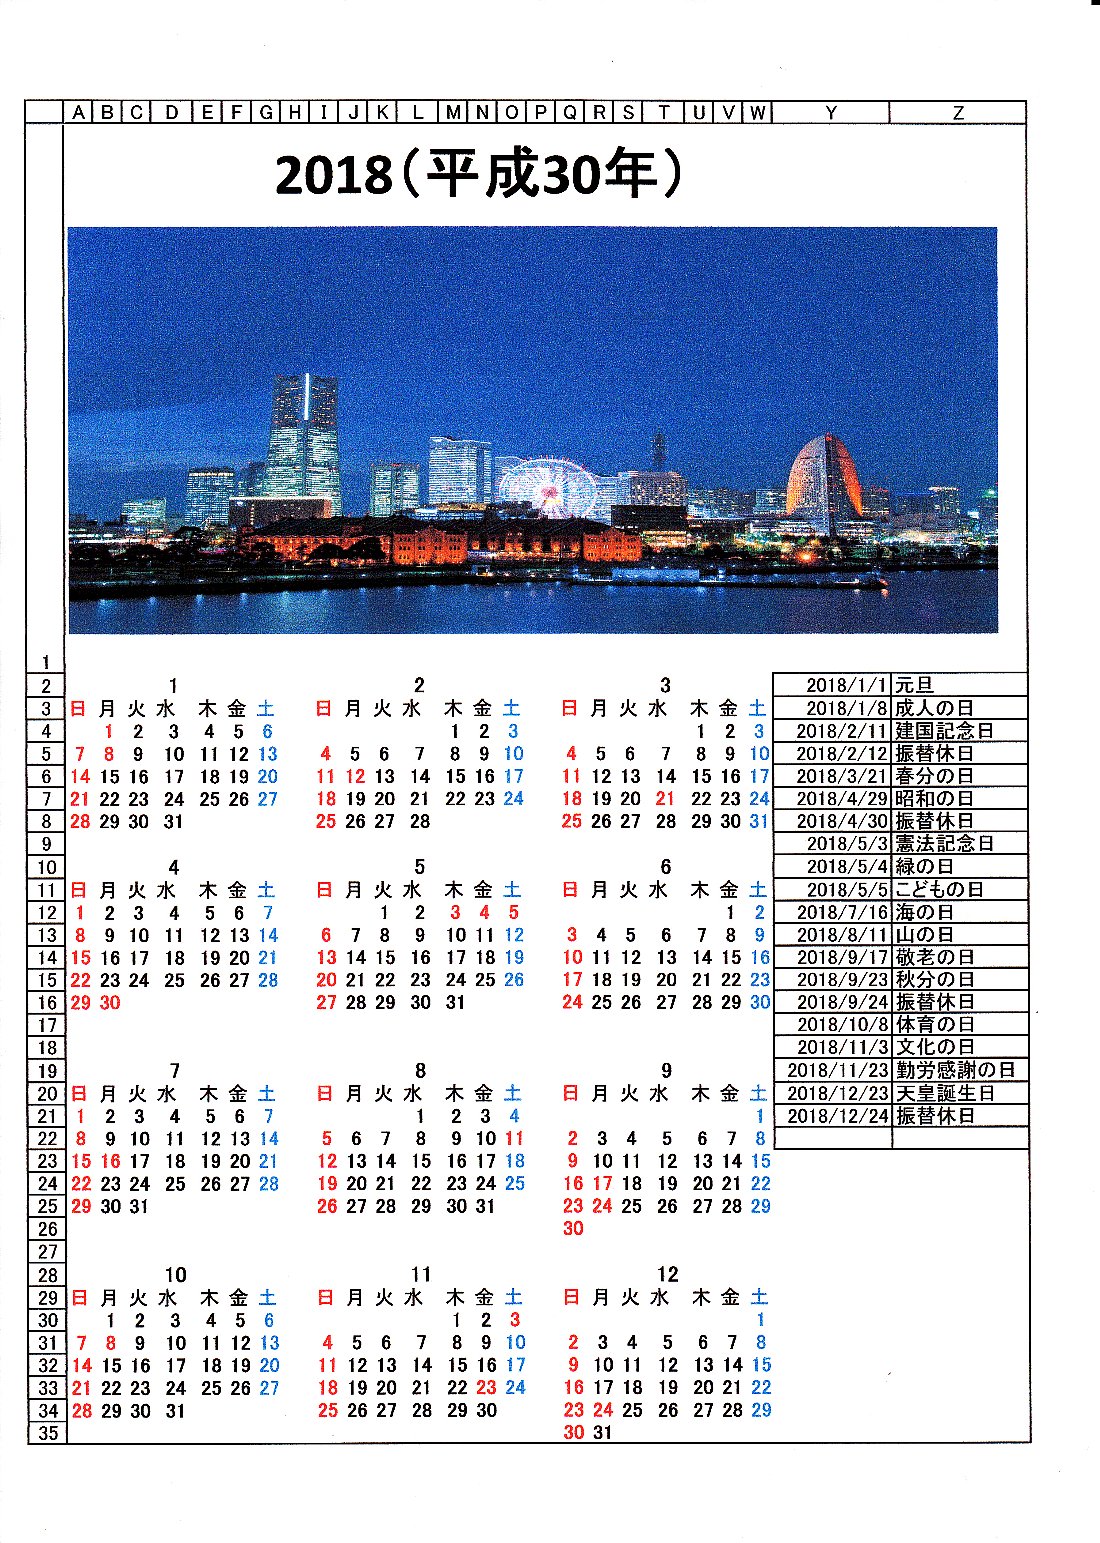 2018（平成３０年）カレンダー_e0065084_1995748.jpg